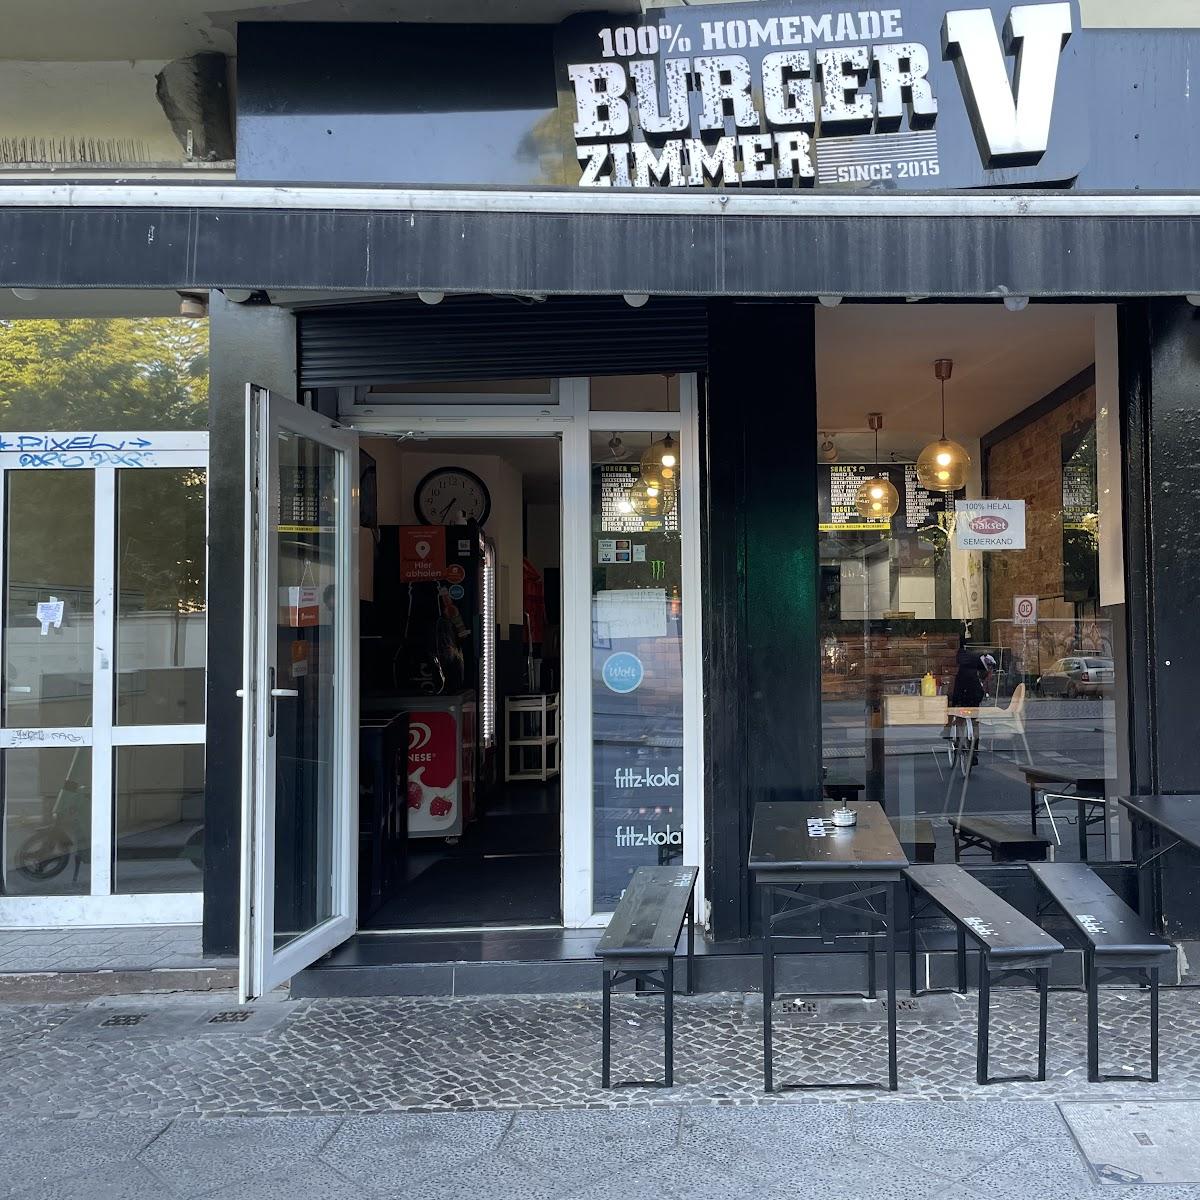 Restaurant "Burger Zimmer V" in Berlin